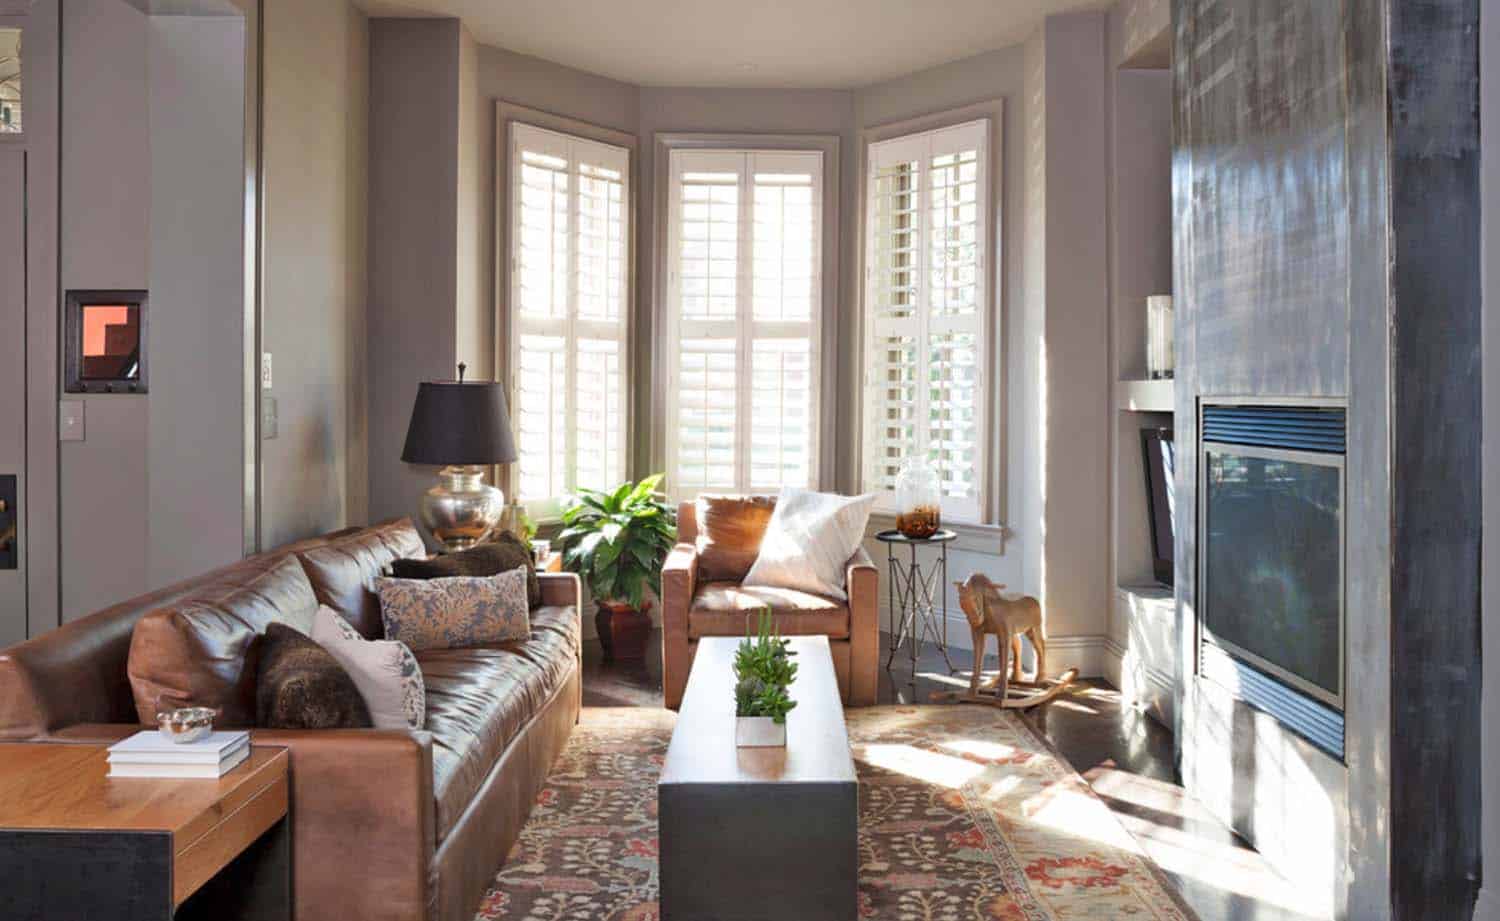 Home renovation in Washington DC unveils unique design details